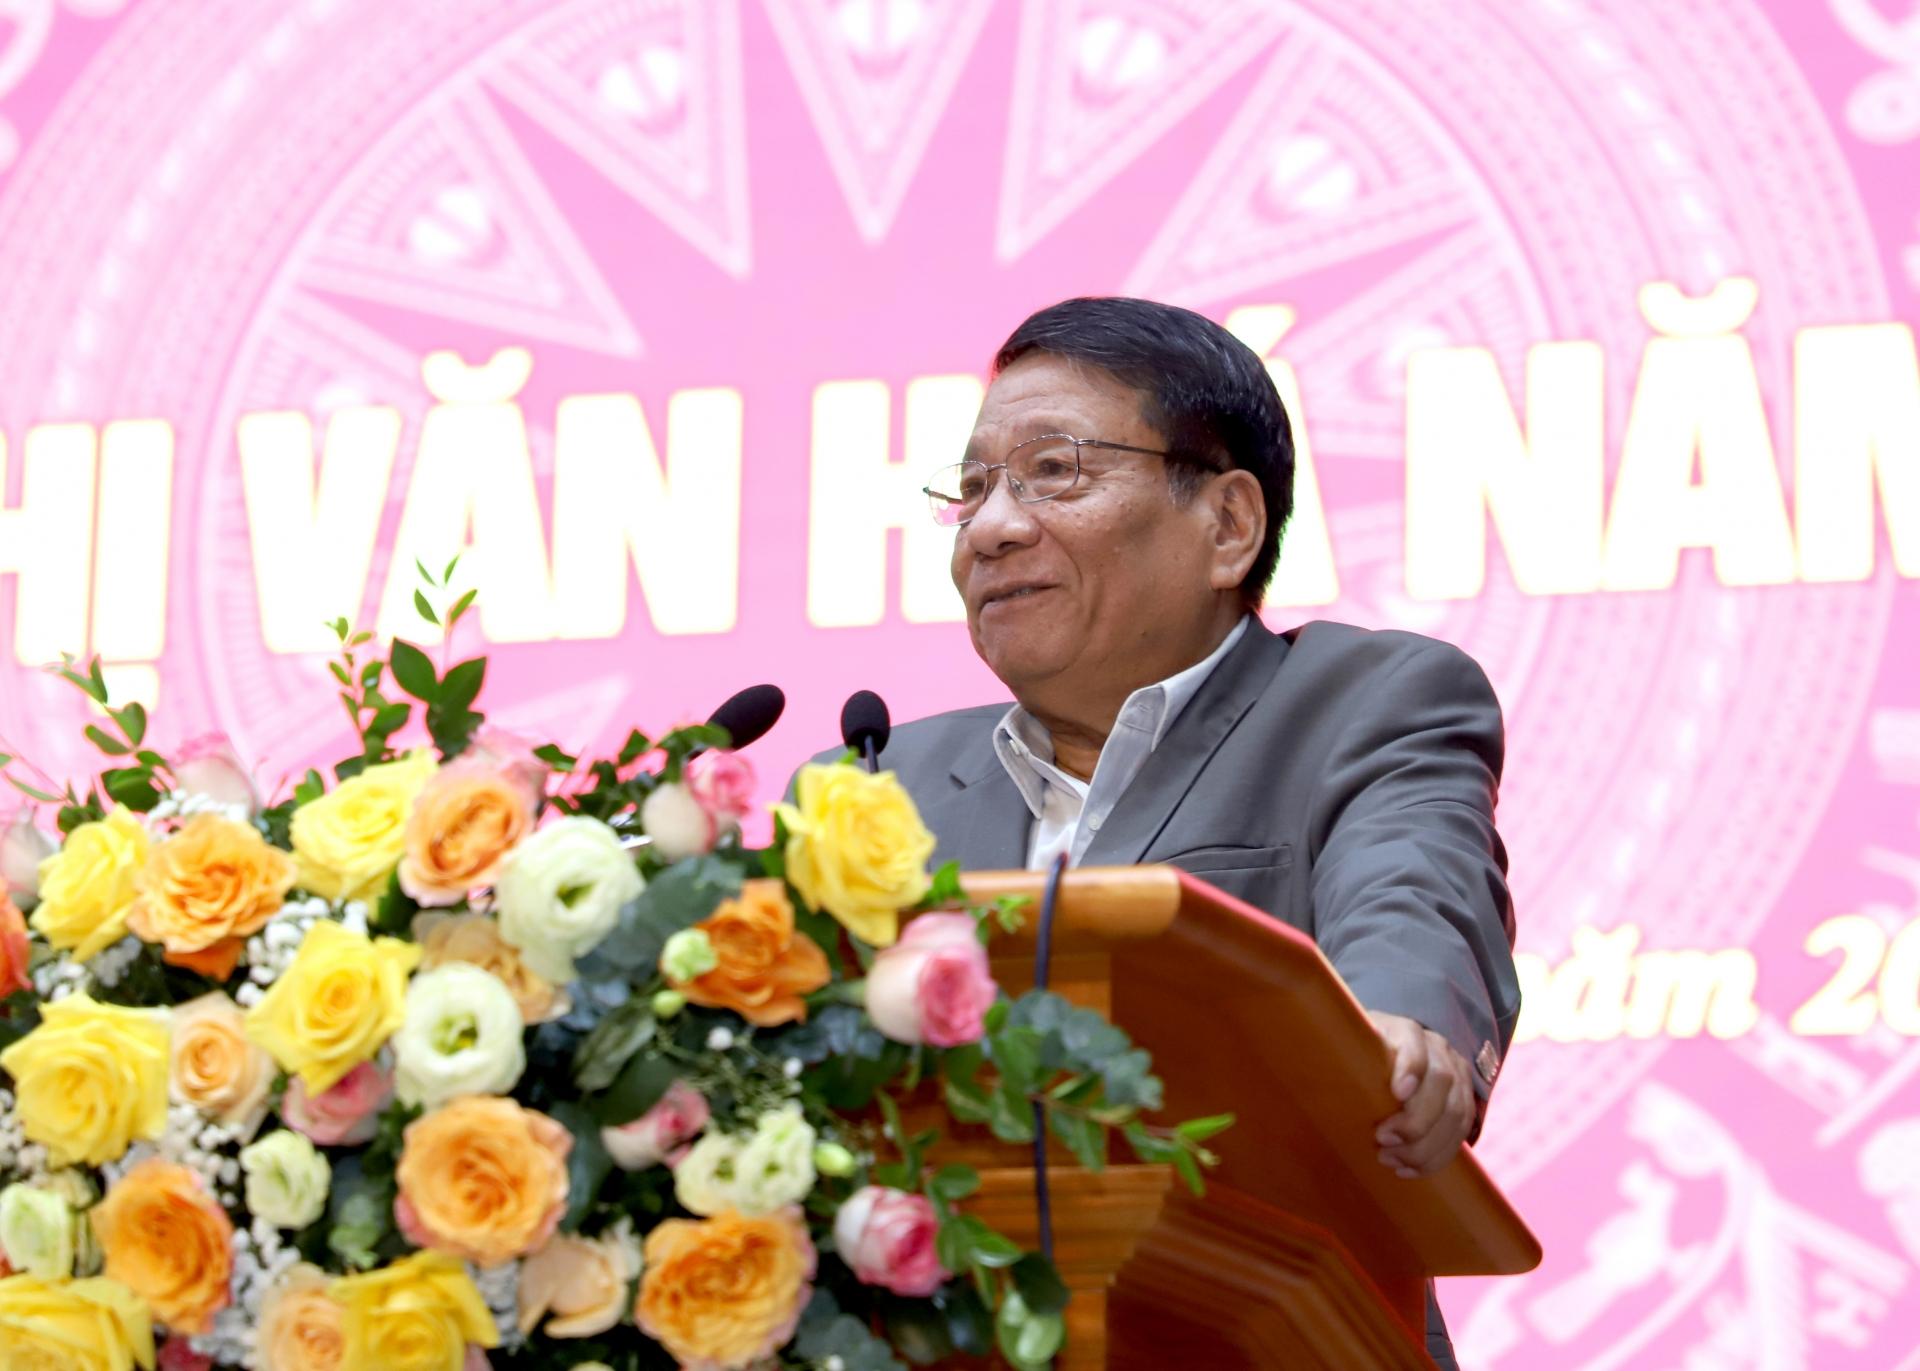 PGS.TS Đặng Văn Bài, Phó Chủ tịch Hội đồng di sản văn hóa quốc gia phát biểu về bảo tồn di sản văn hóa gắn với phát triển du lịch bền vững ở Hà Giang.